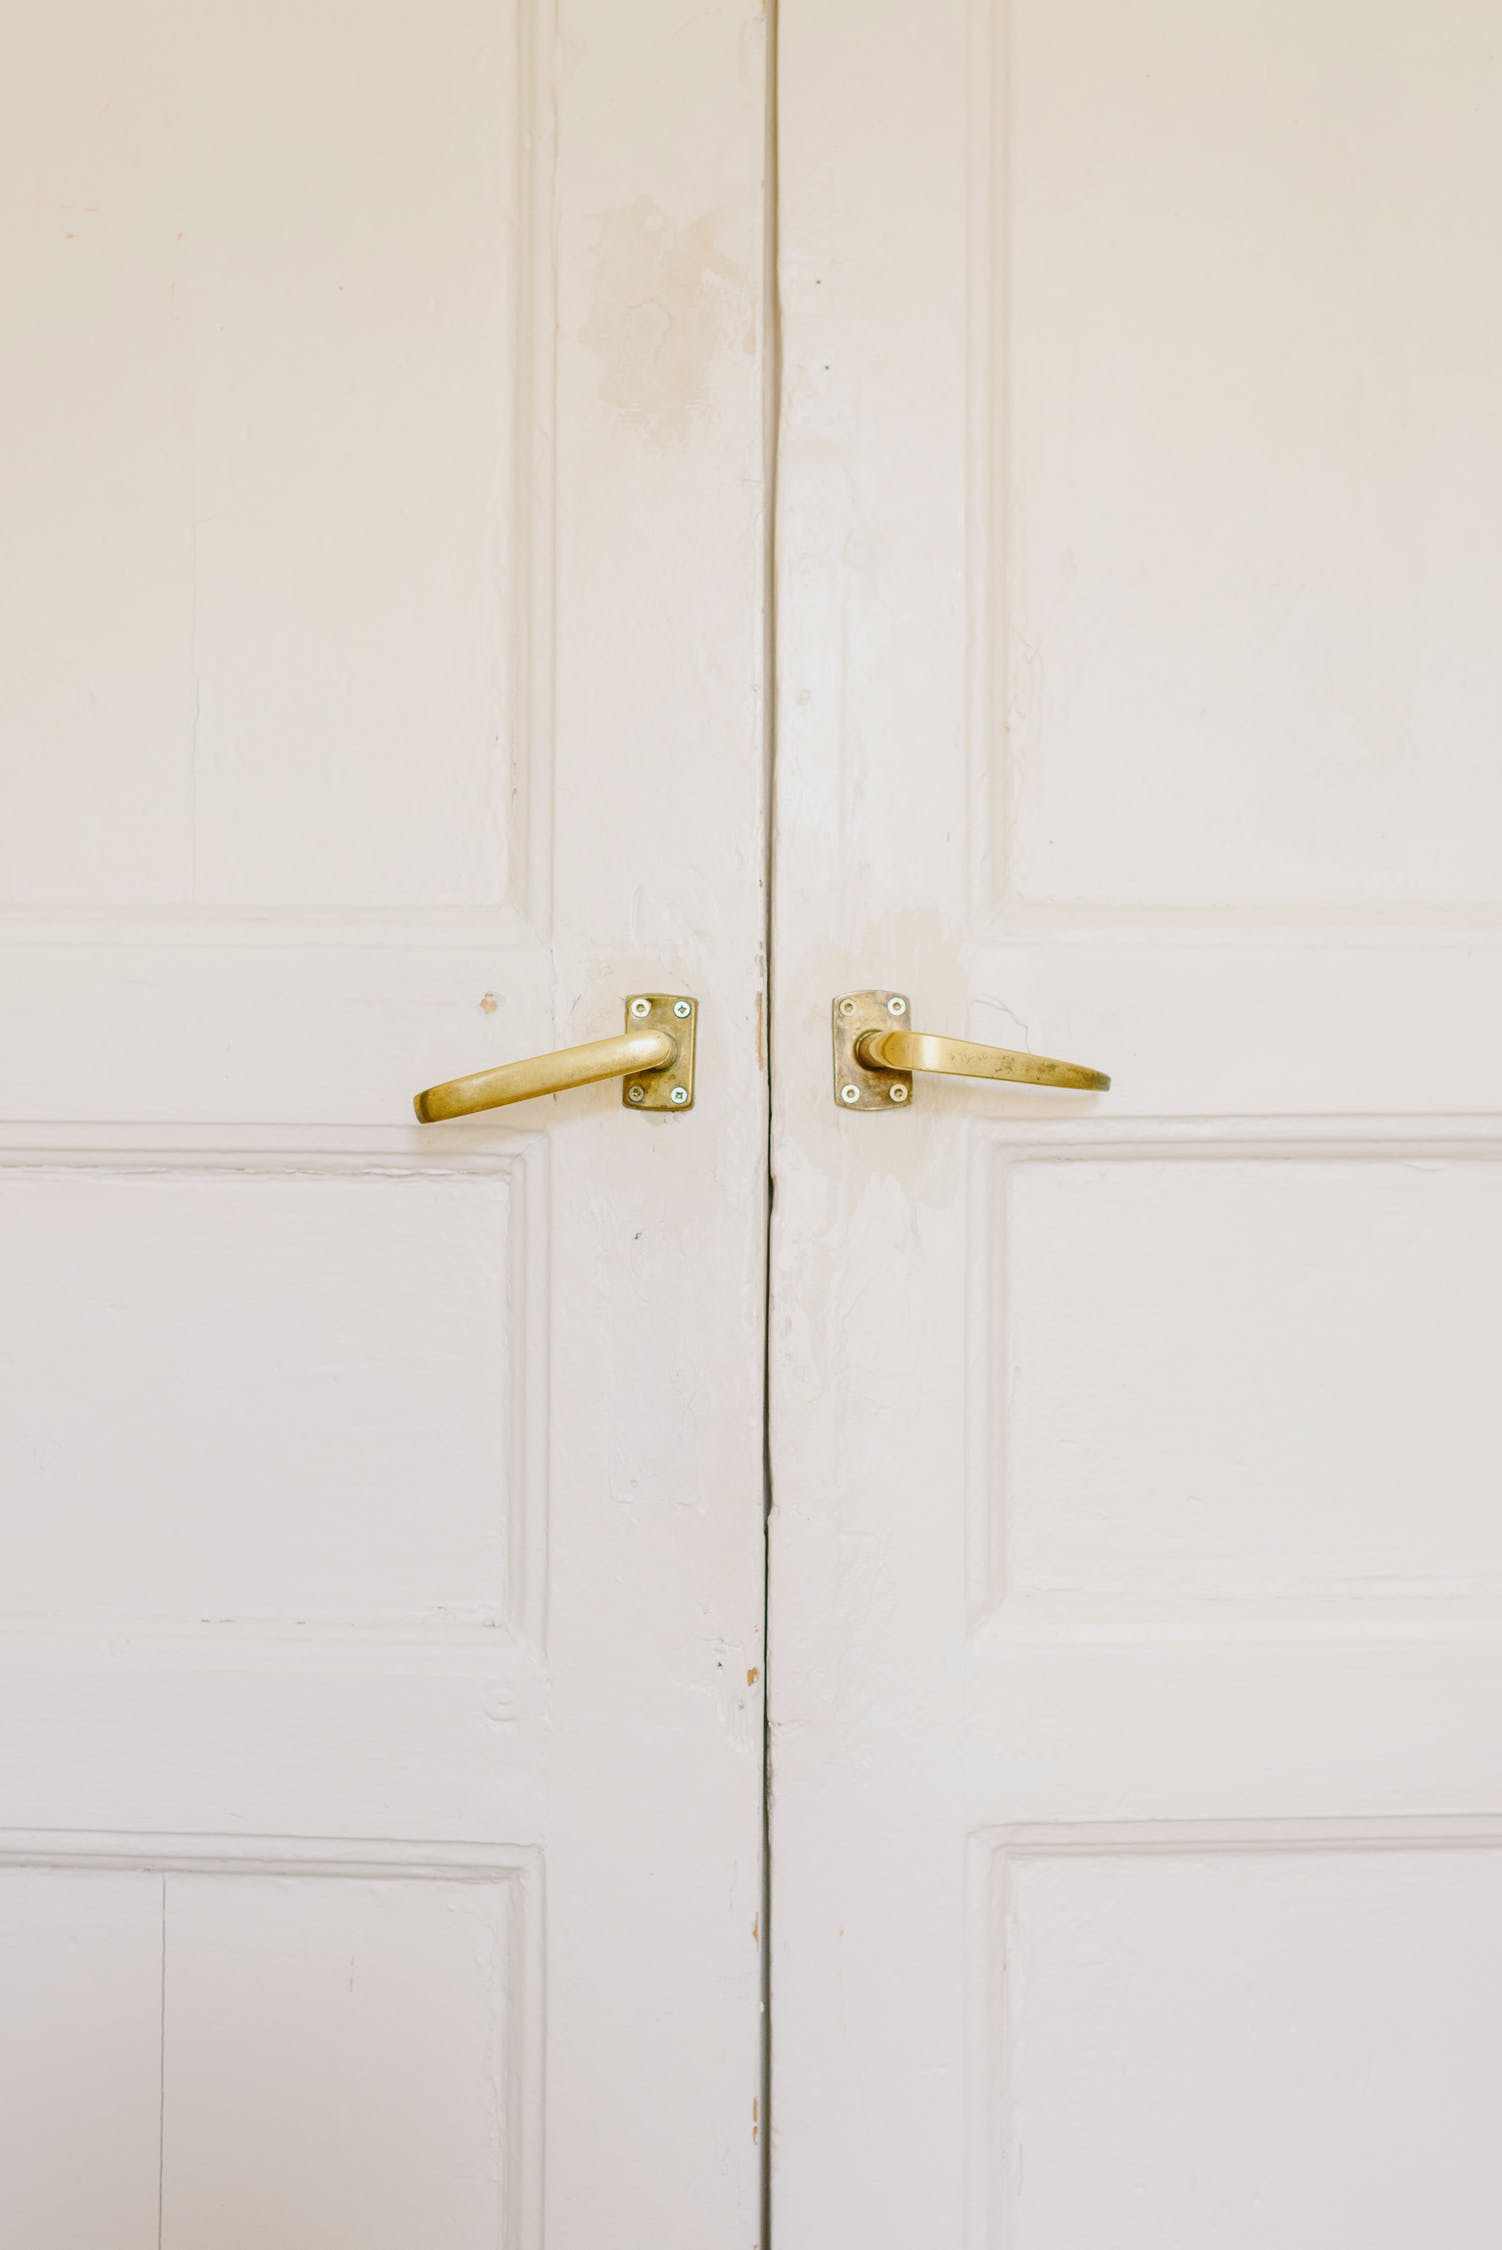 white doors with golden handles